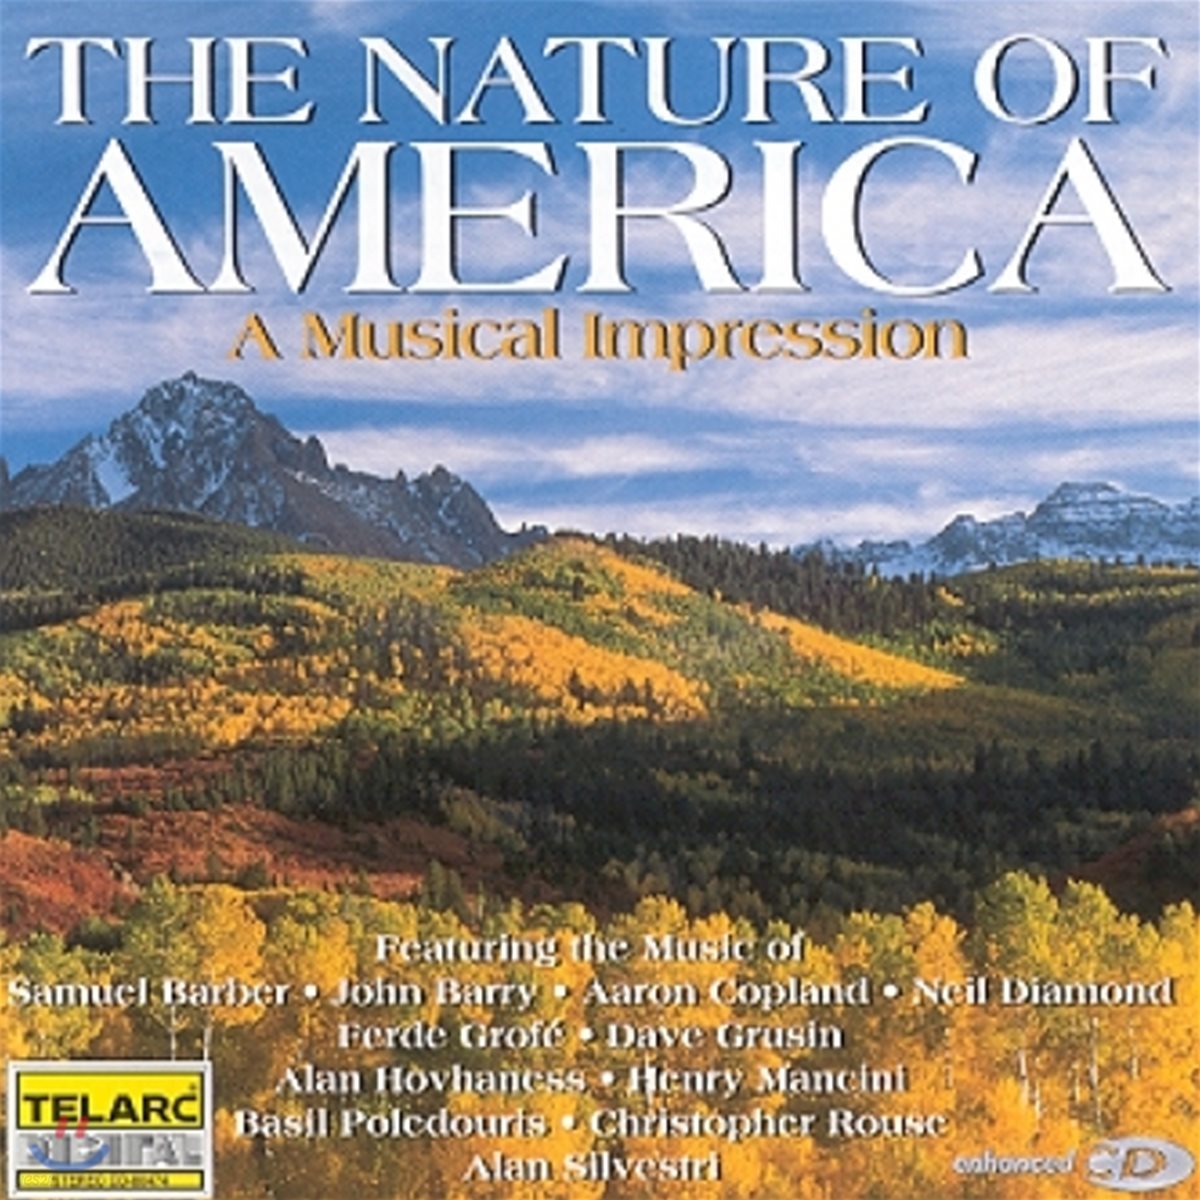 아메리카의 자연 - 어 뮤지컬 임프레션 (The Nature of America - A Musical Impression)